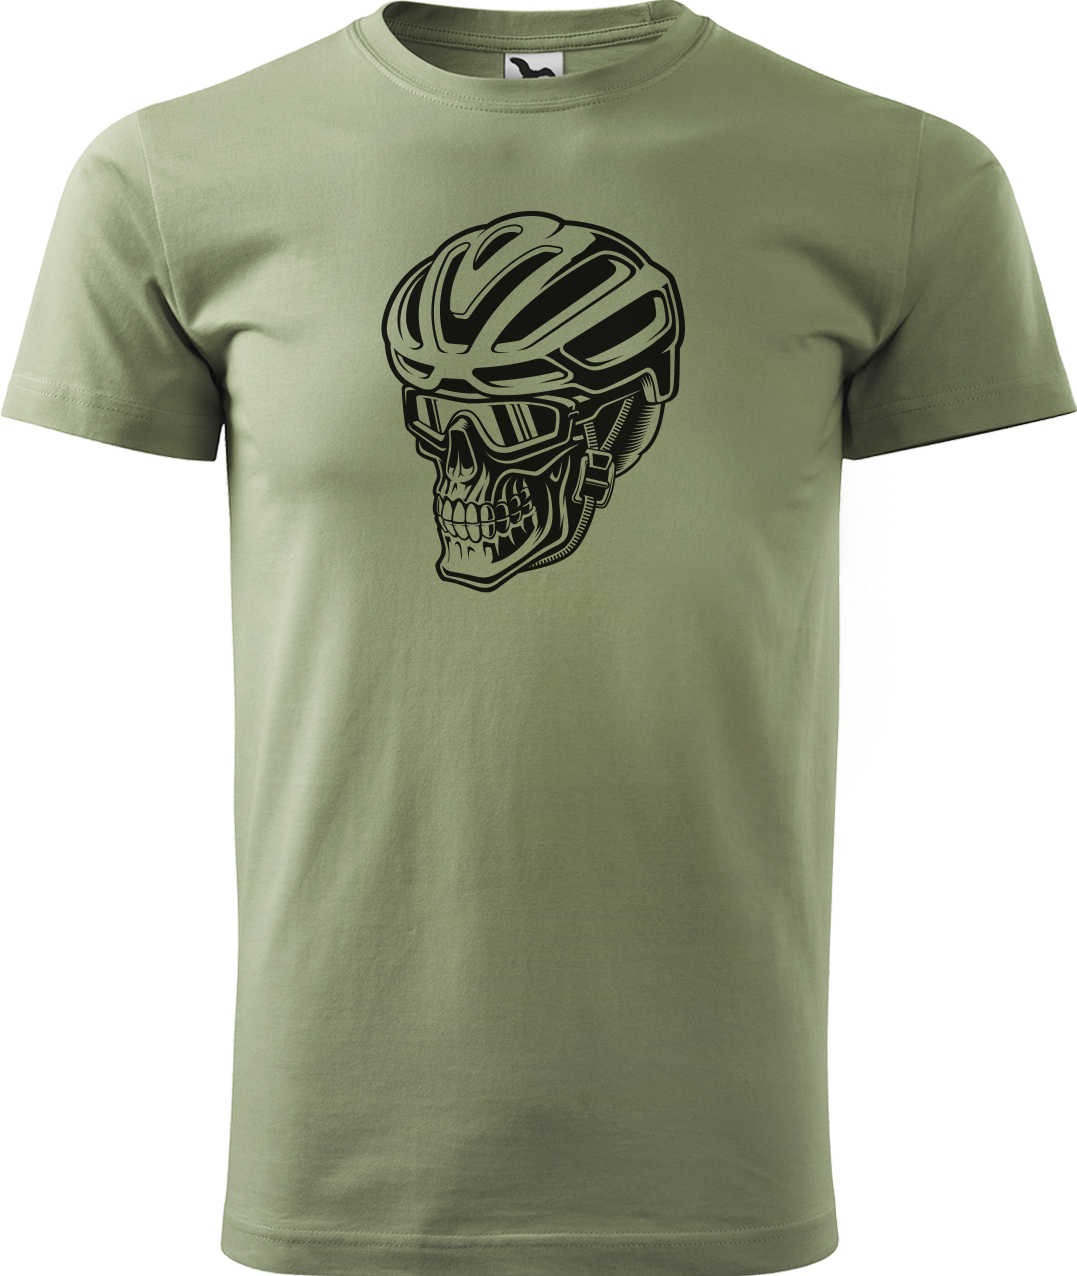 Pánské tričko pro cyklistu - Lebka v helmě Velikost: L, Barva: Světlá khaki (28)